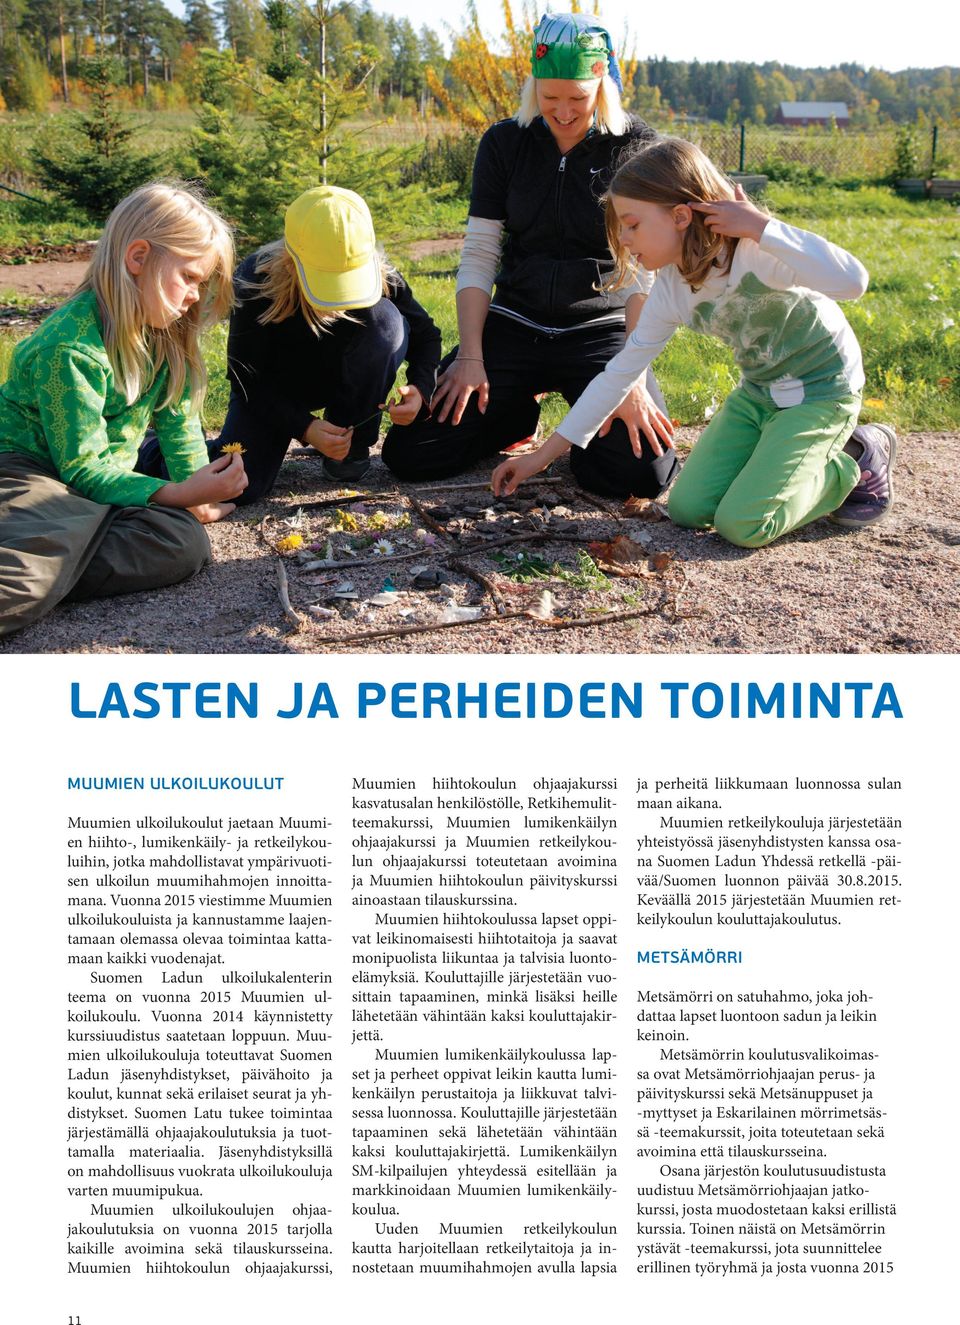 Suomen Ladun ulkoilukalenterin teema on vuonna 2015 Muumien ulkoilukoulu. Vuonna 2014 käynnistetty kurssiuudistus saatetaan loppuun.